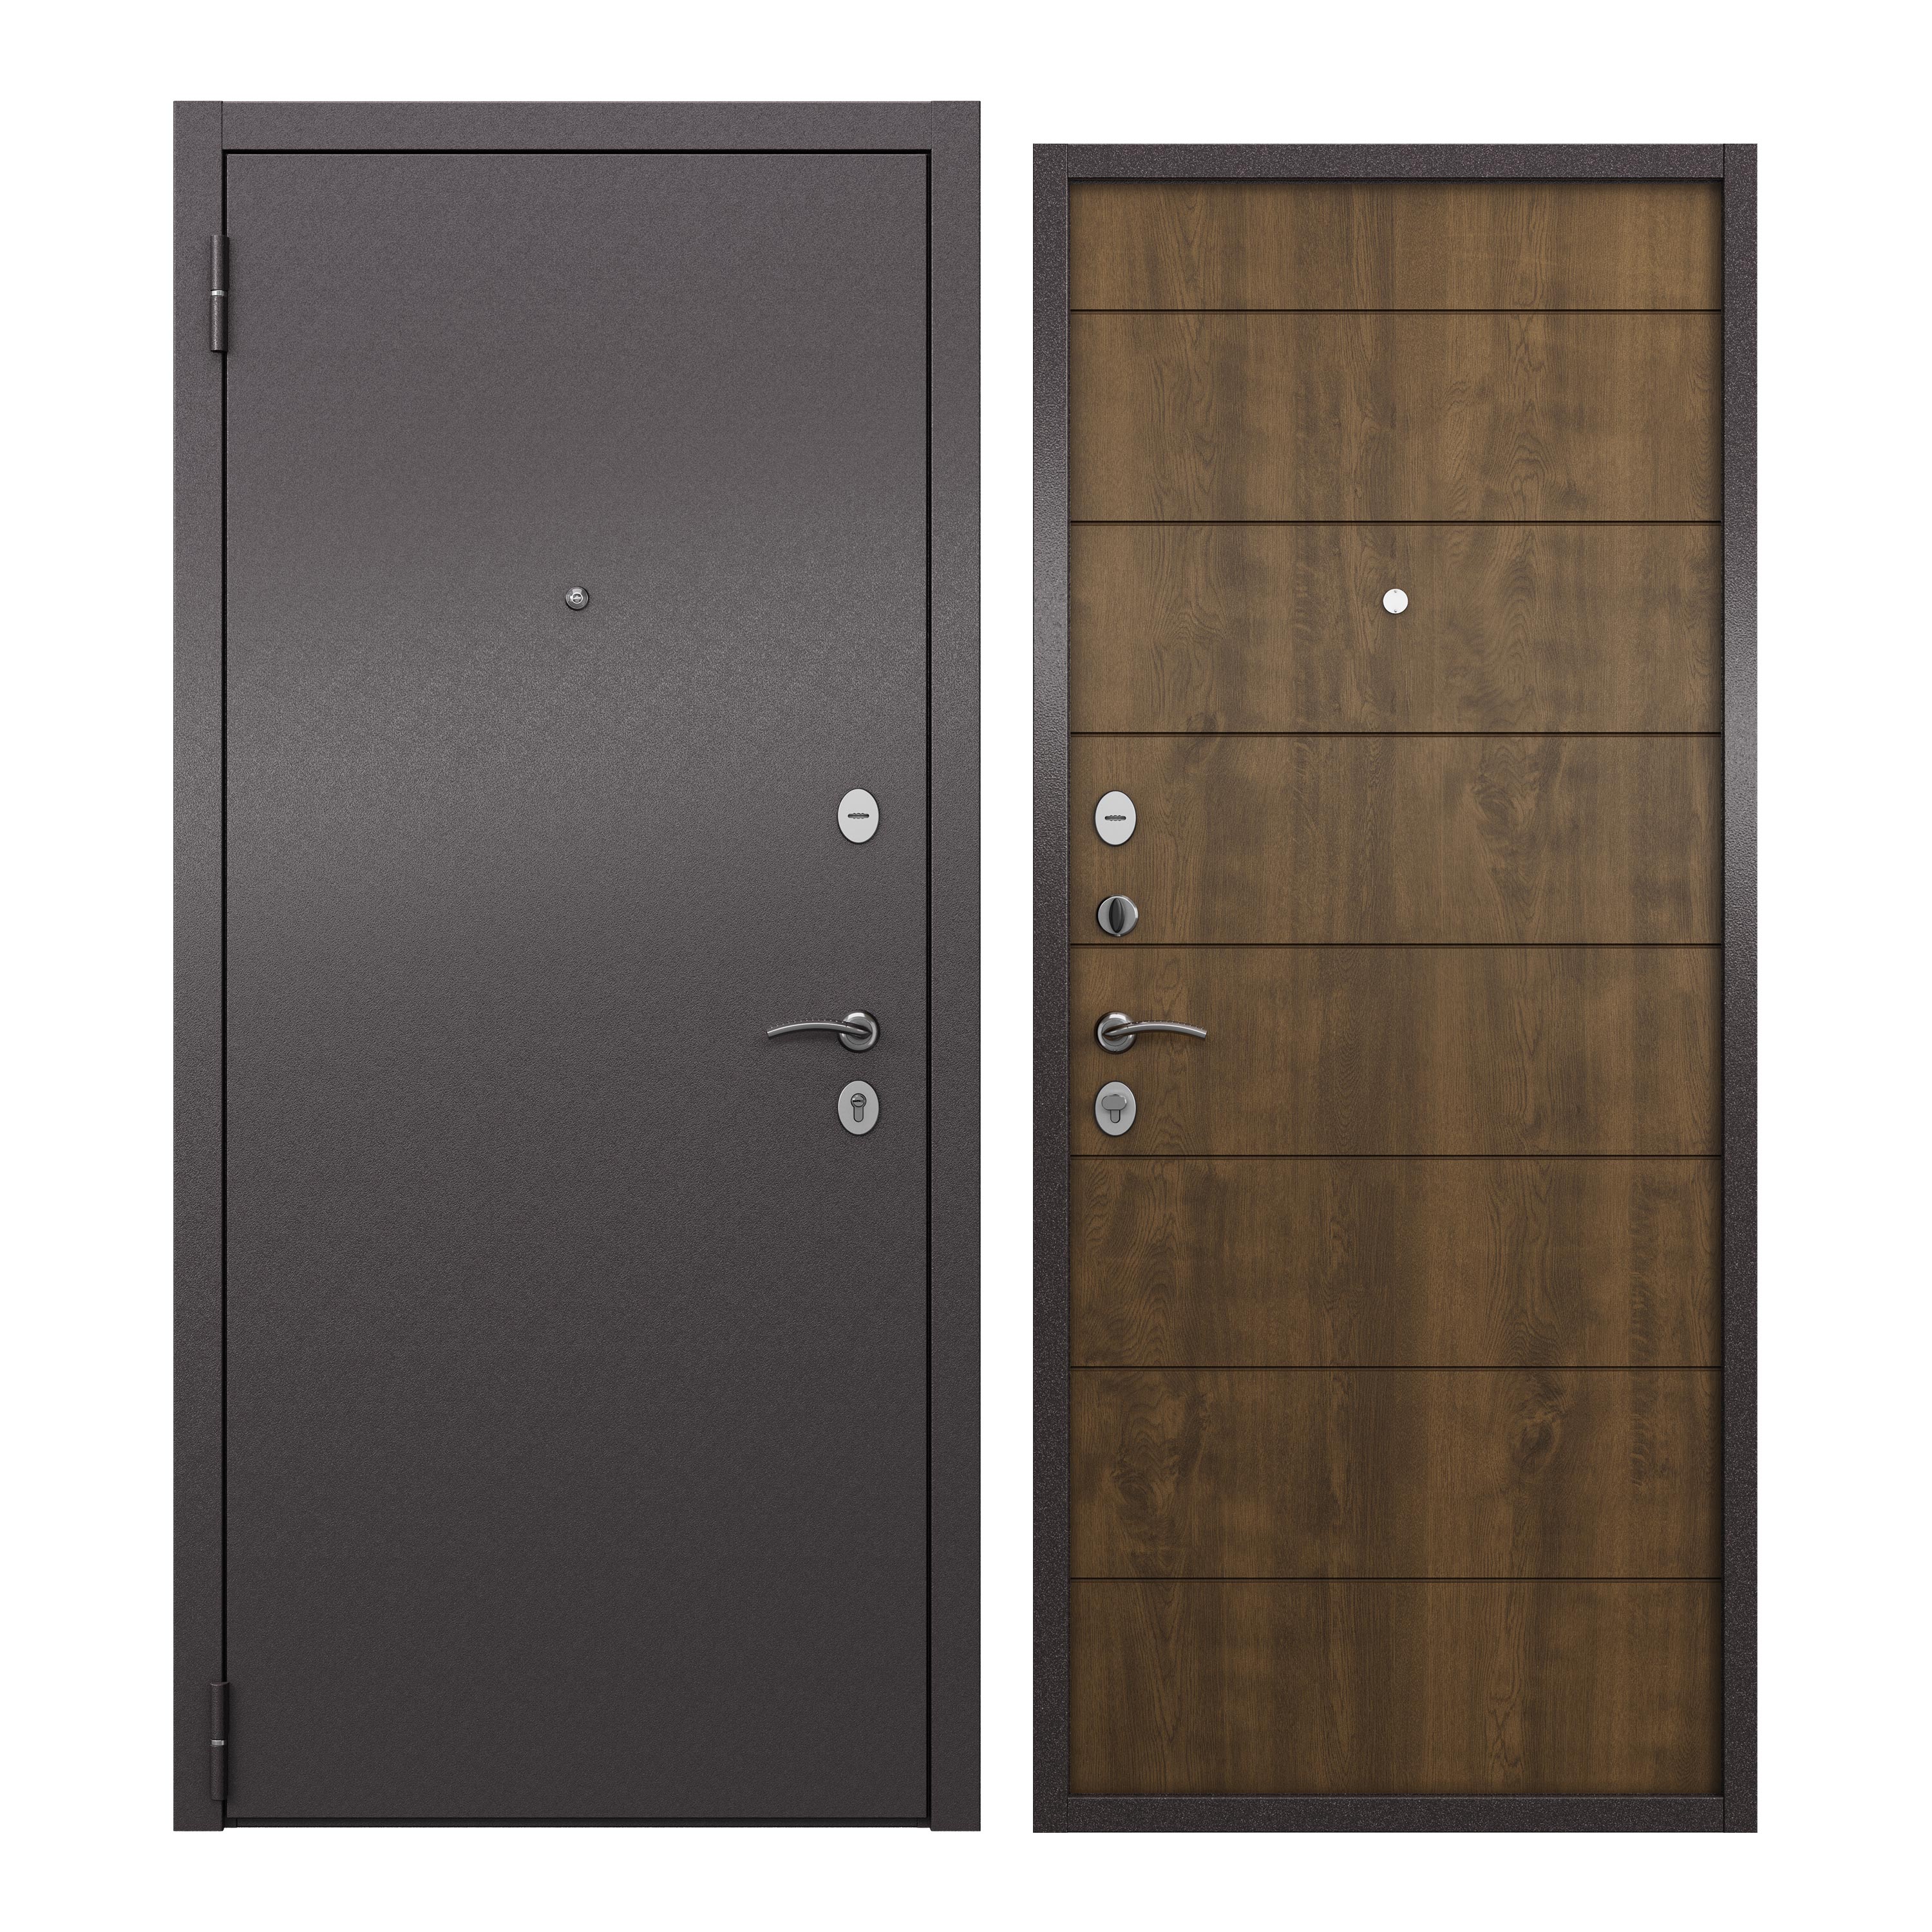 Дверь входная для квартиры ProLine металлическая Apartment 860х2050, левая, коричневый грецкий орех metro chef очищенный 500 гр